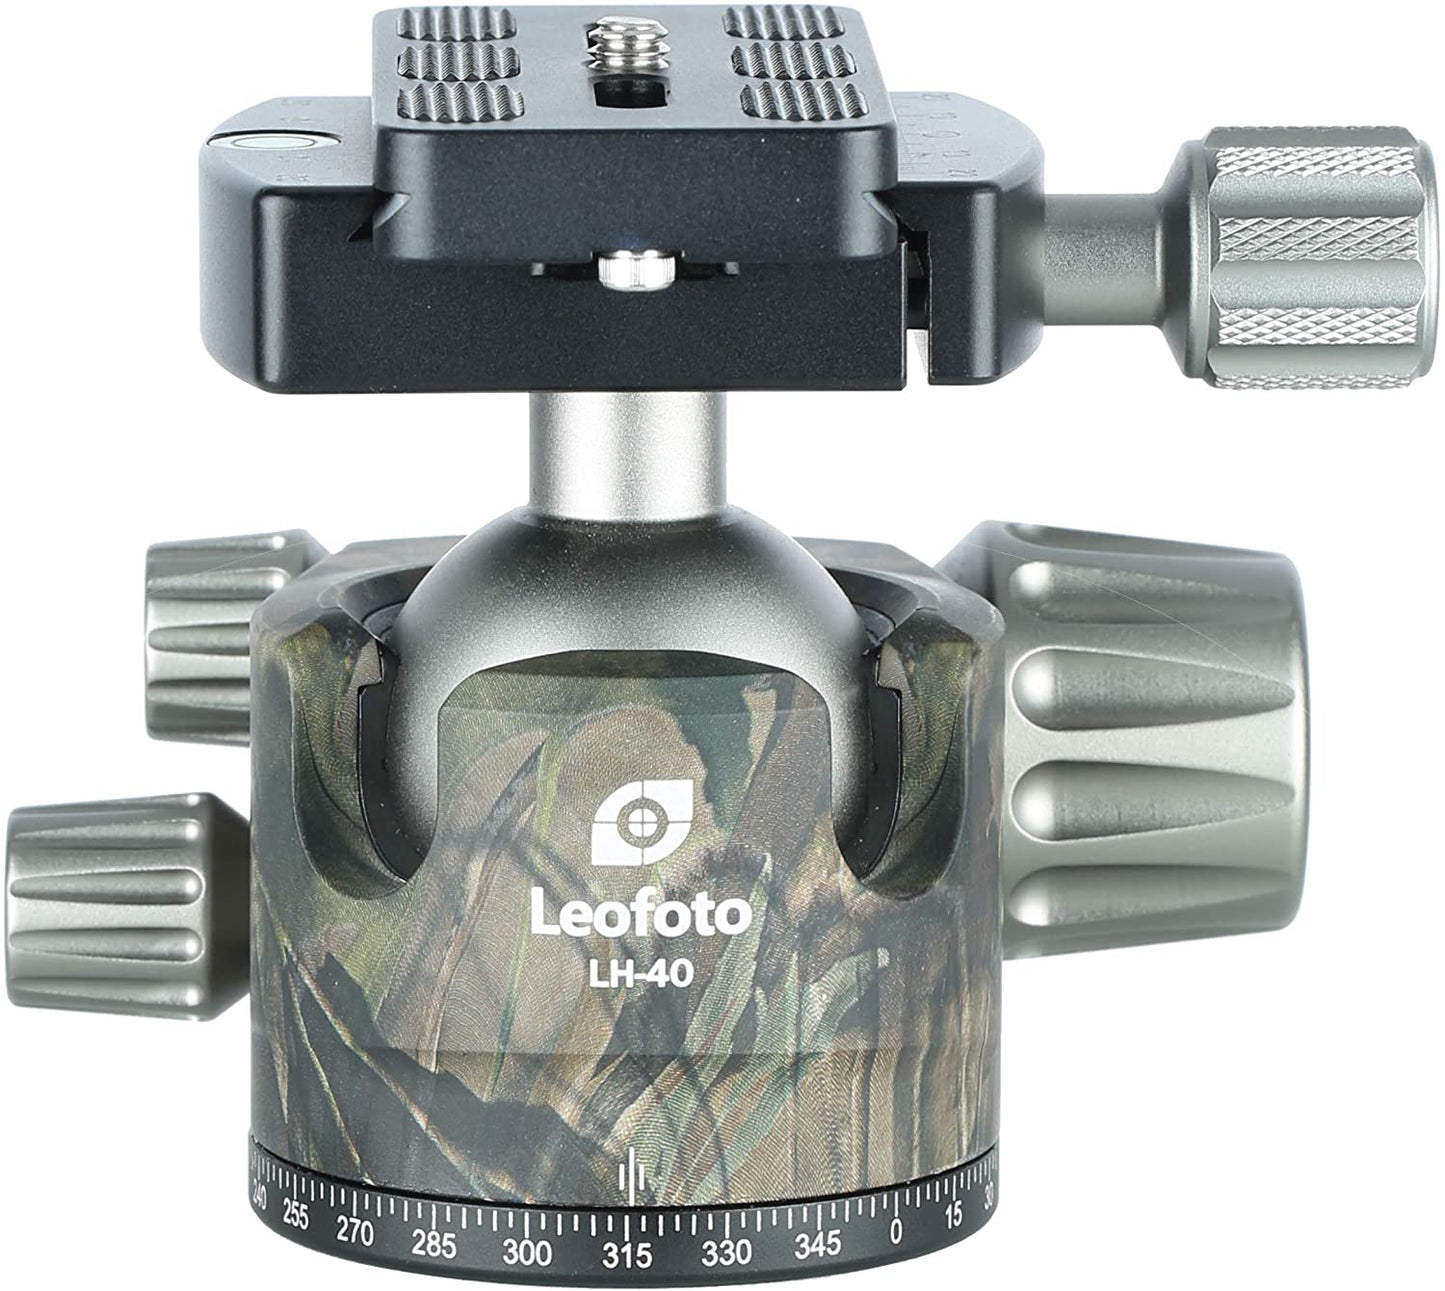 
                  
                    Leofoto LH-40 Low Profile Ball Head (Black/Camo) + QR Plate | Arca Compatible
                  
                